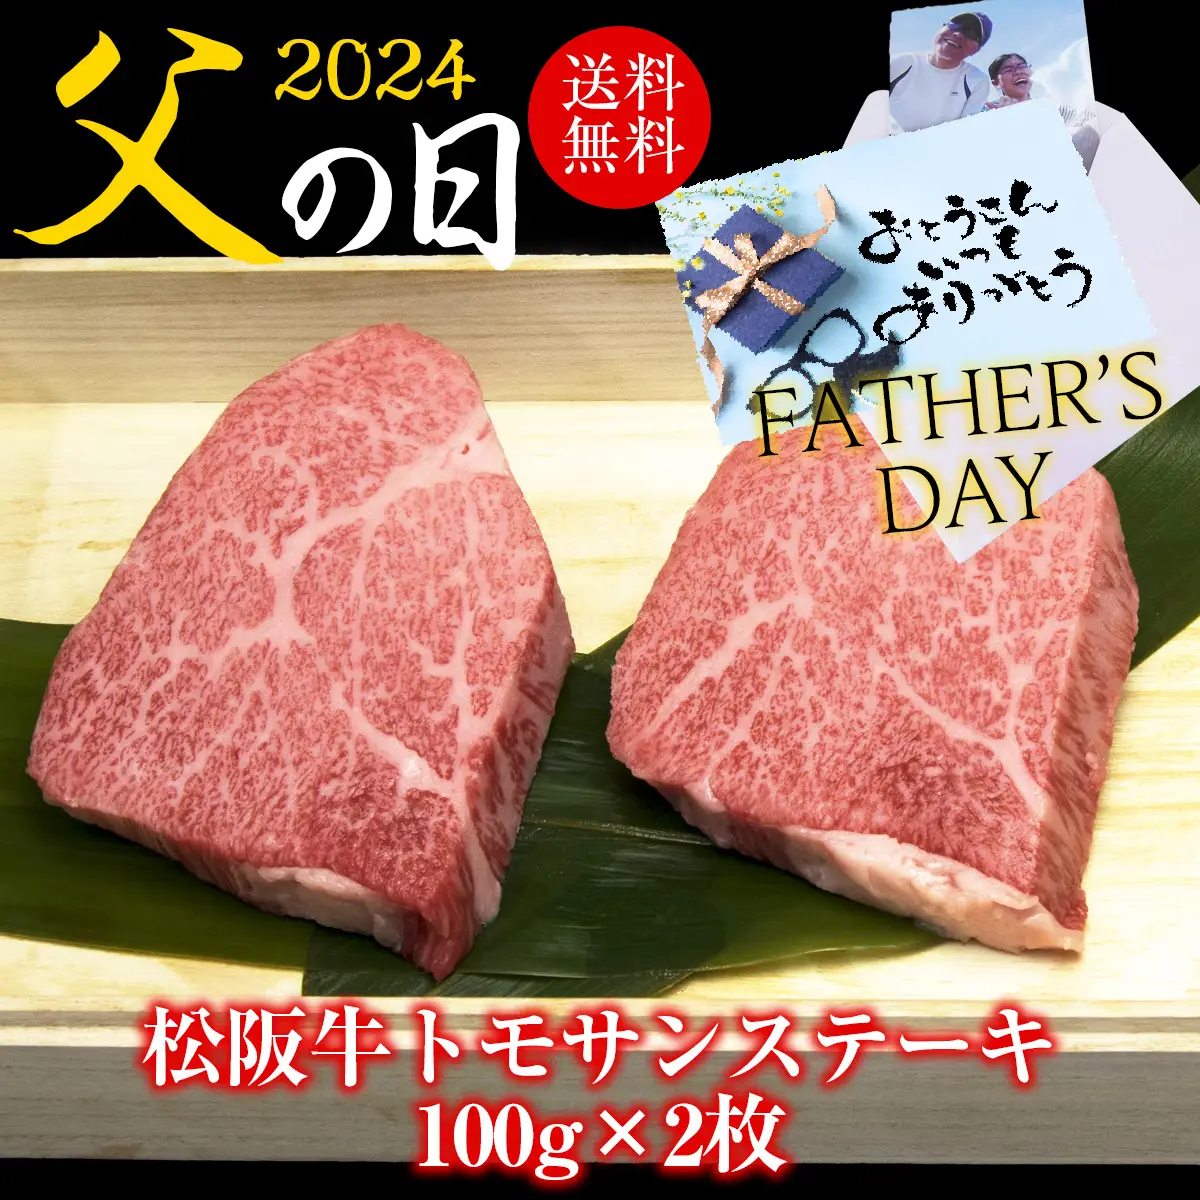 【父の日】松阪牛トモサンステーキ100g×2枚